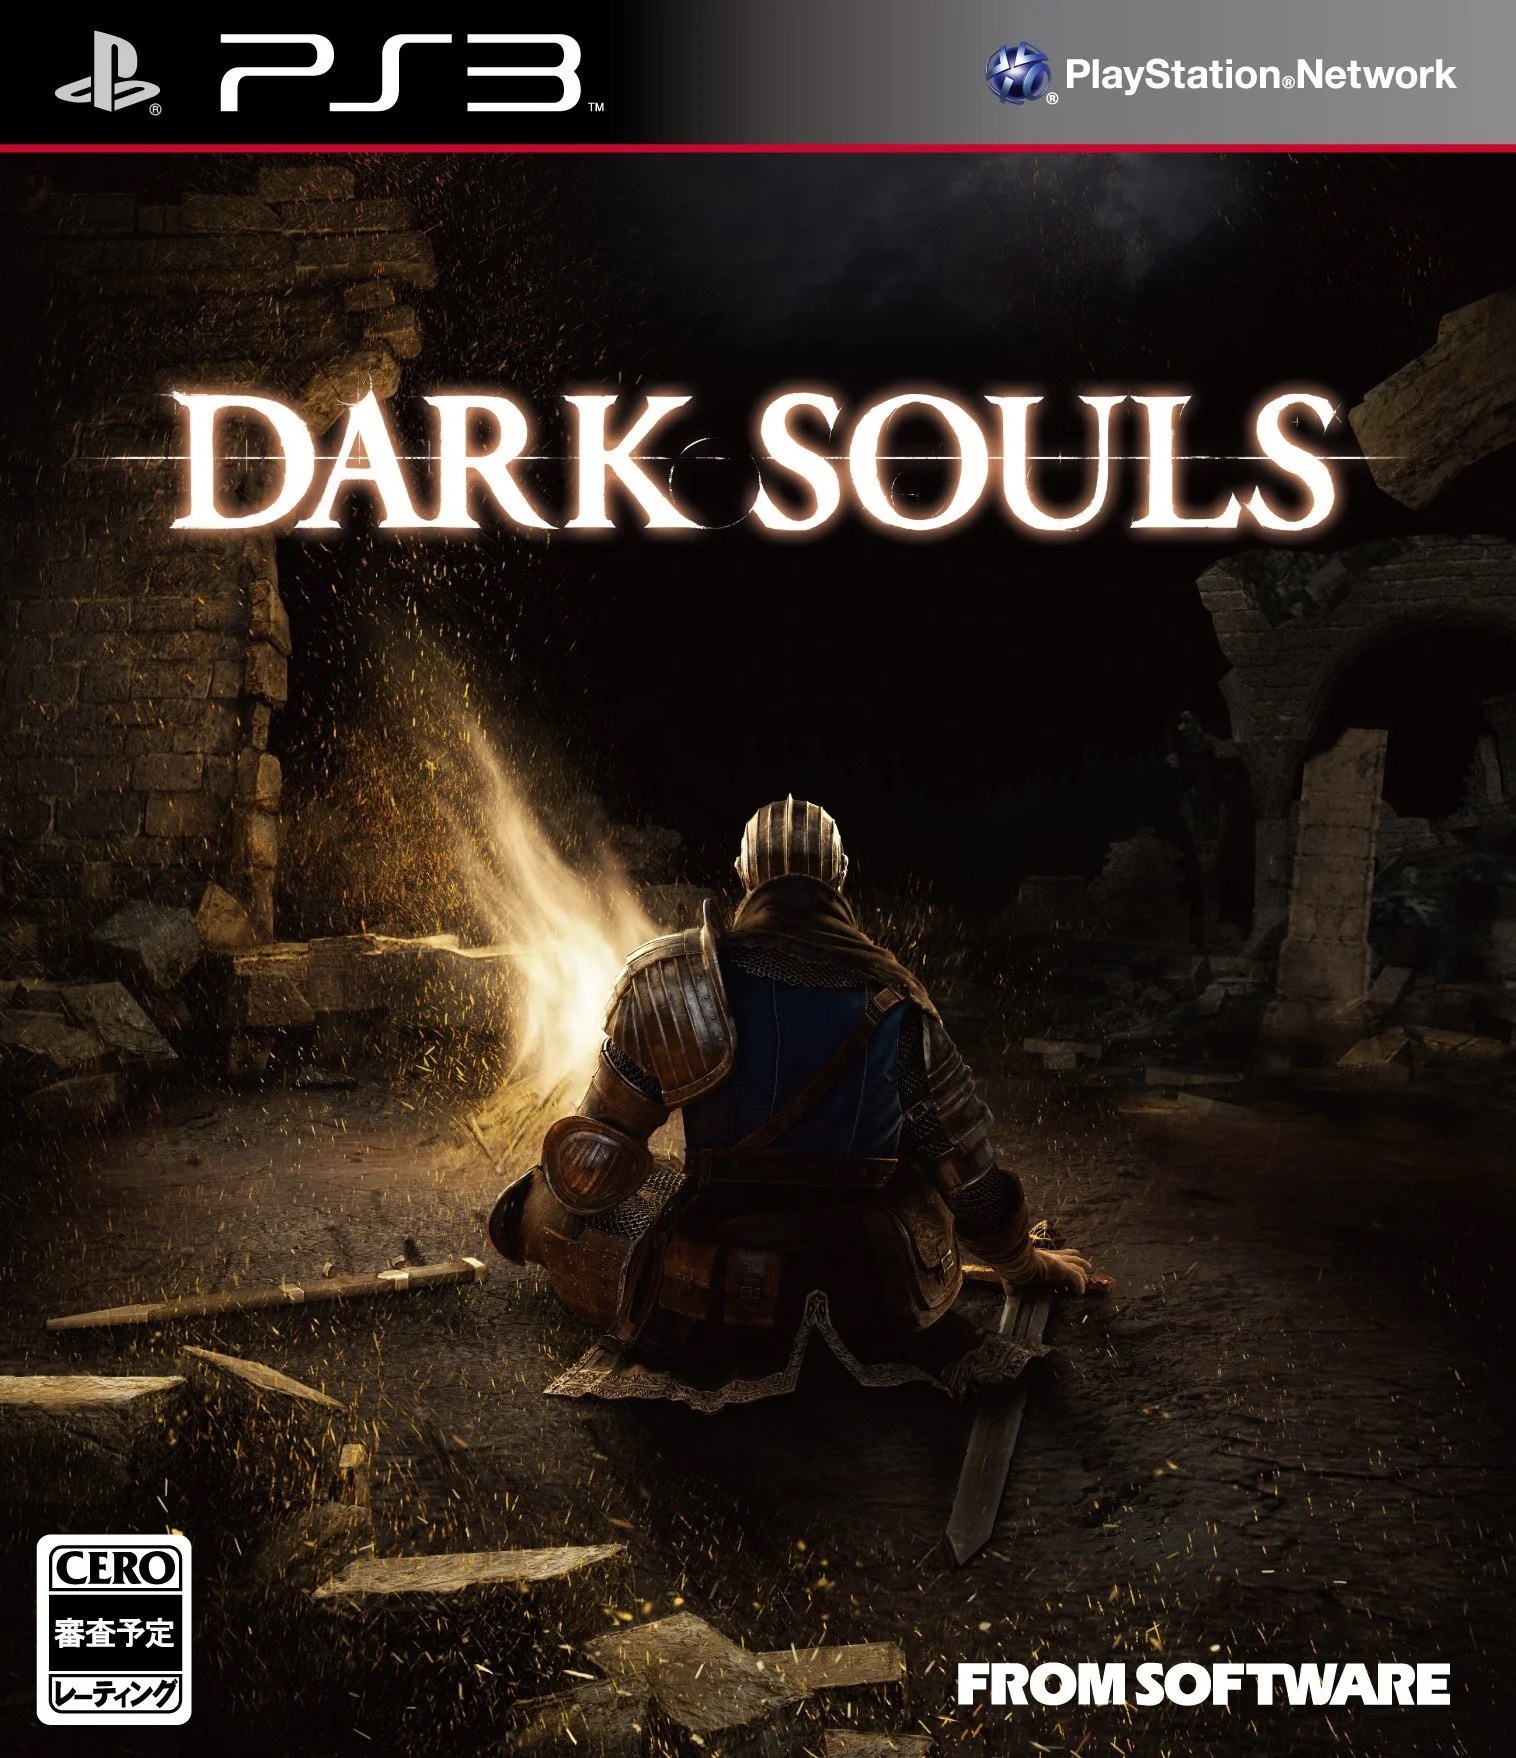 Seria o Dark Souls o melhor jogo de todos os tempos? - Meio Bit